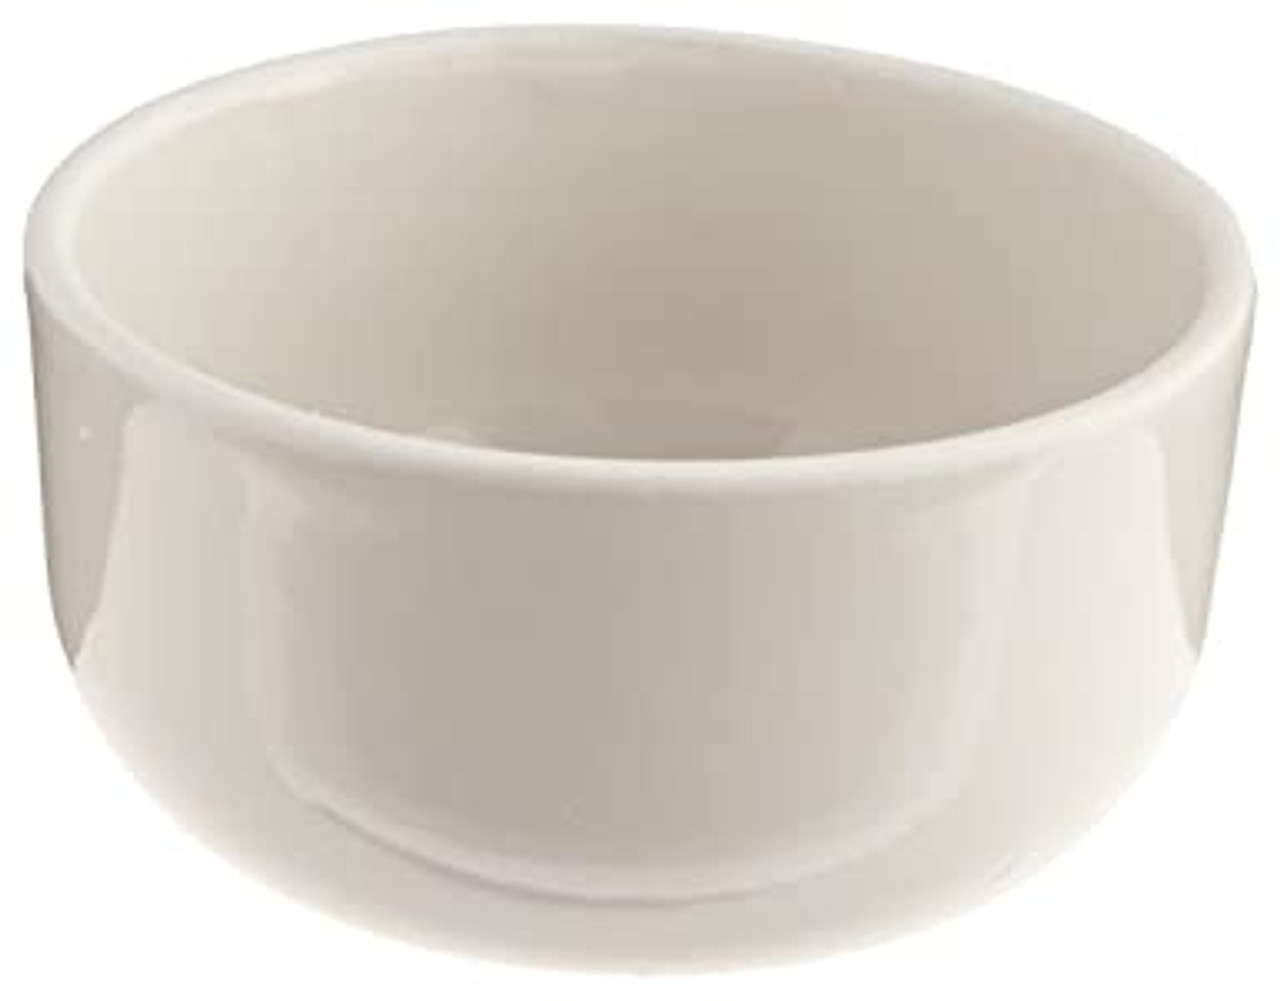 CoorsTek 66105 High-Form Crucible, Porcelain; 12 mL, 35 mm top OD